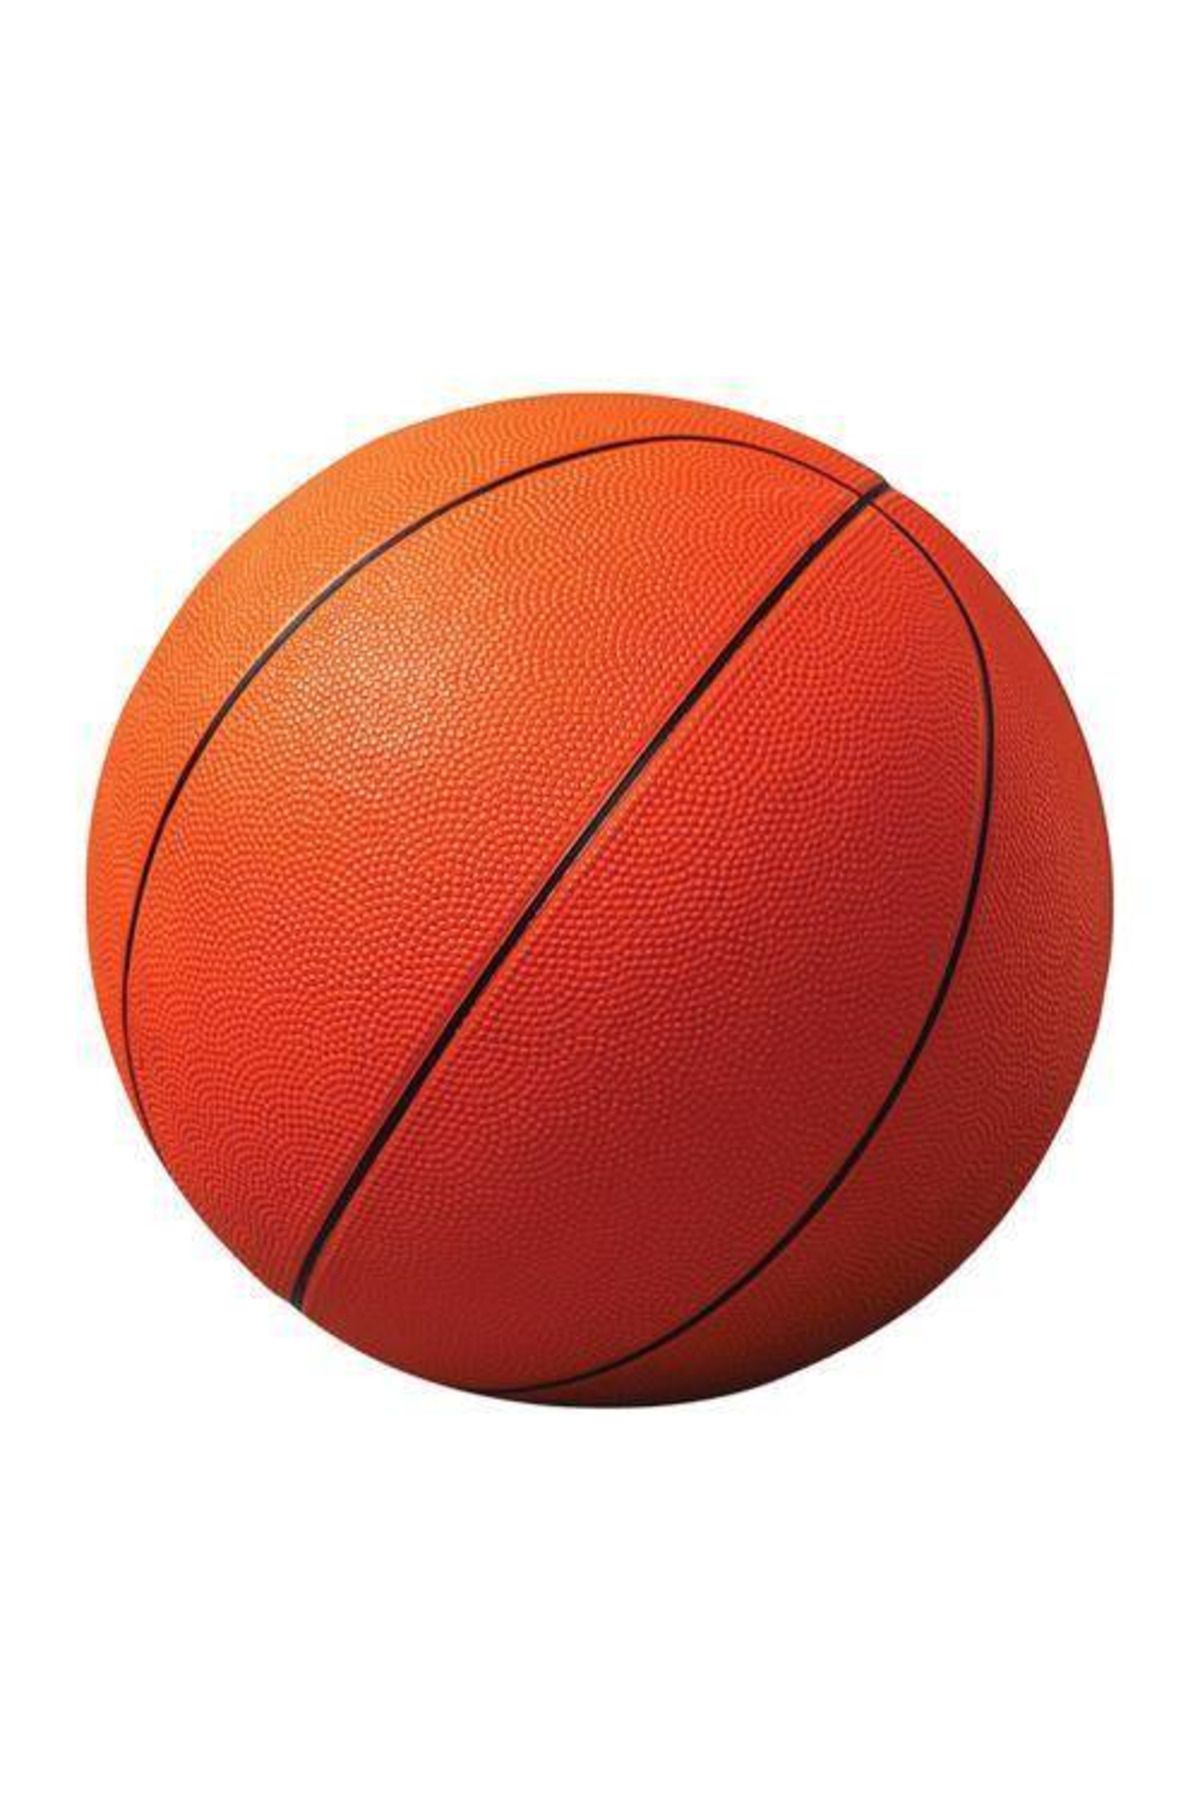 Yetkin Home Profesyonel Boy Kauçuk Basketbol Topu: Okullar Için Kaliteli Oyun Deneyimi